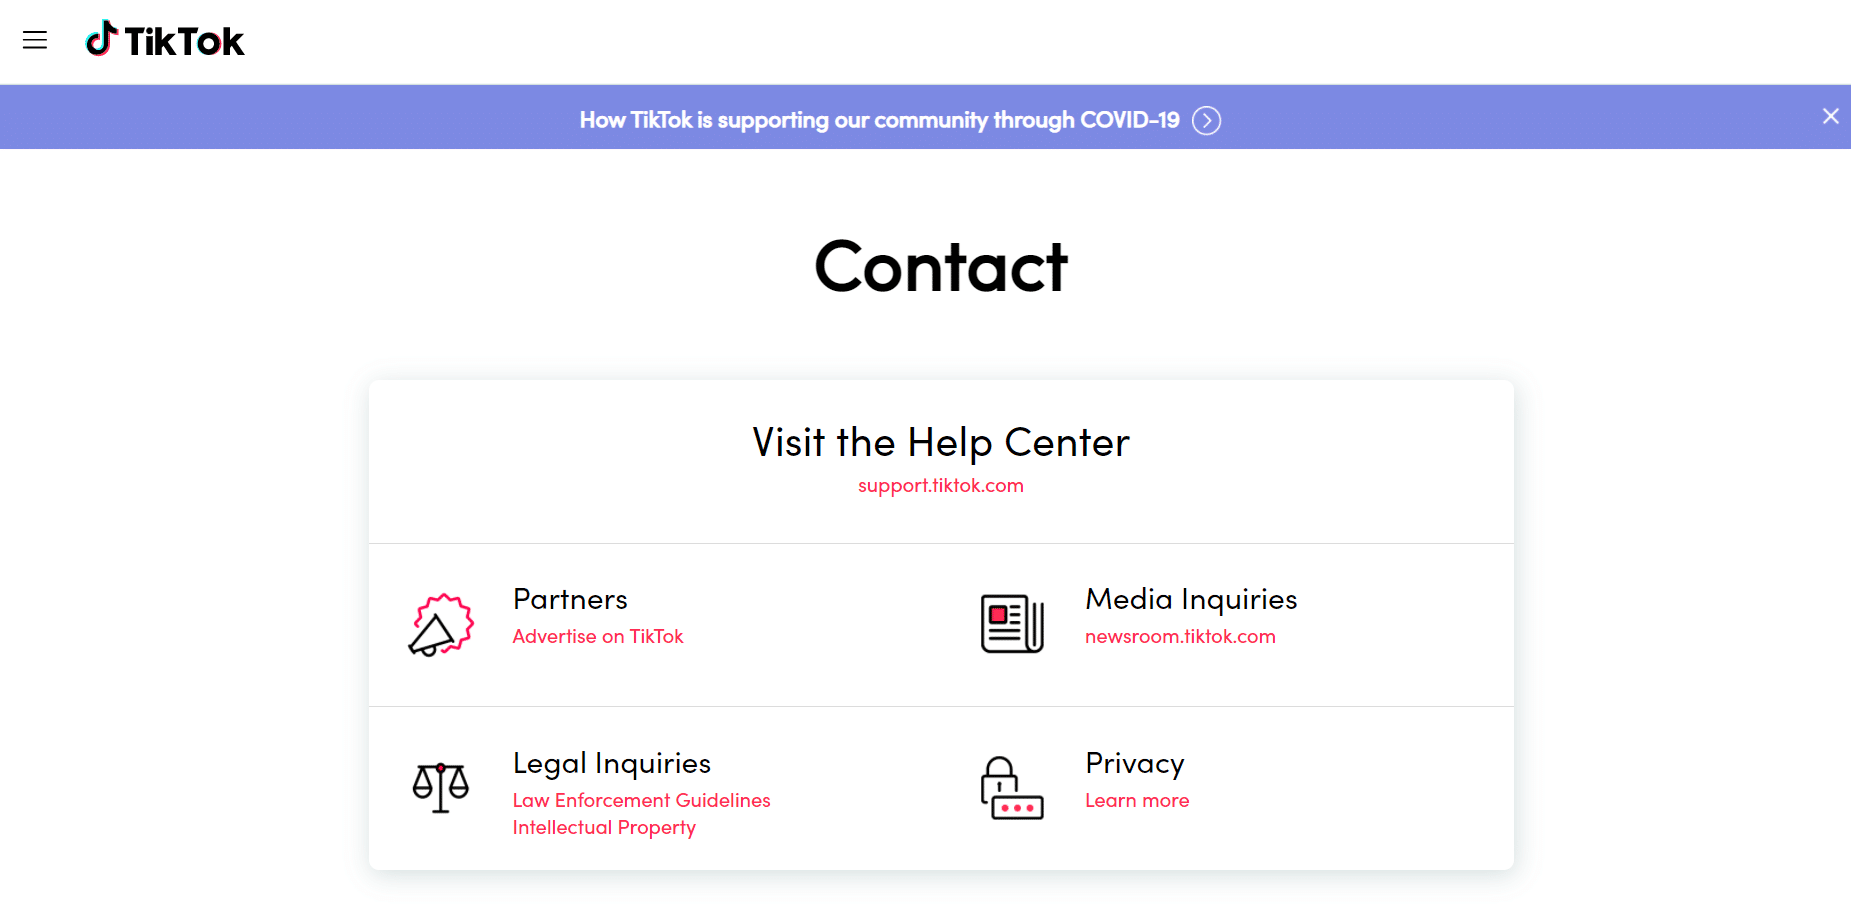 TikTok Contact page